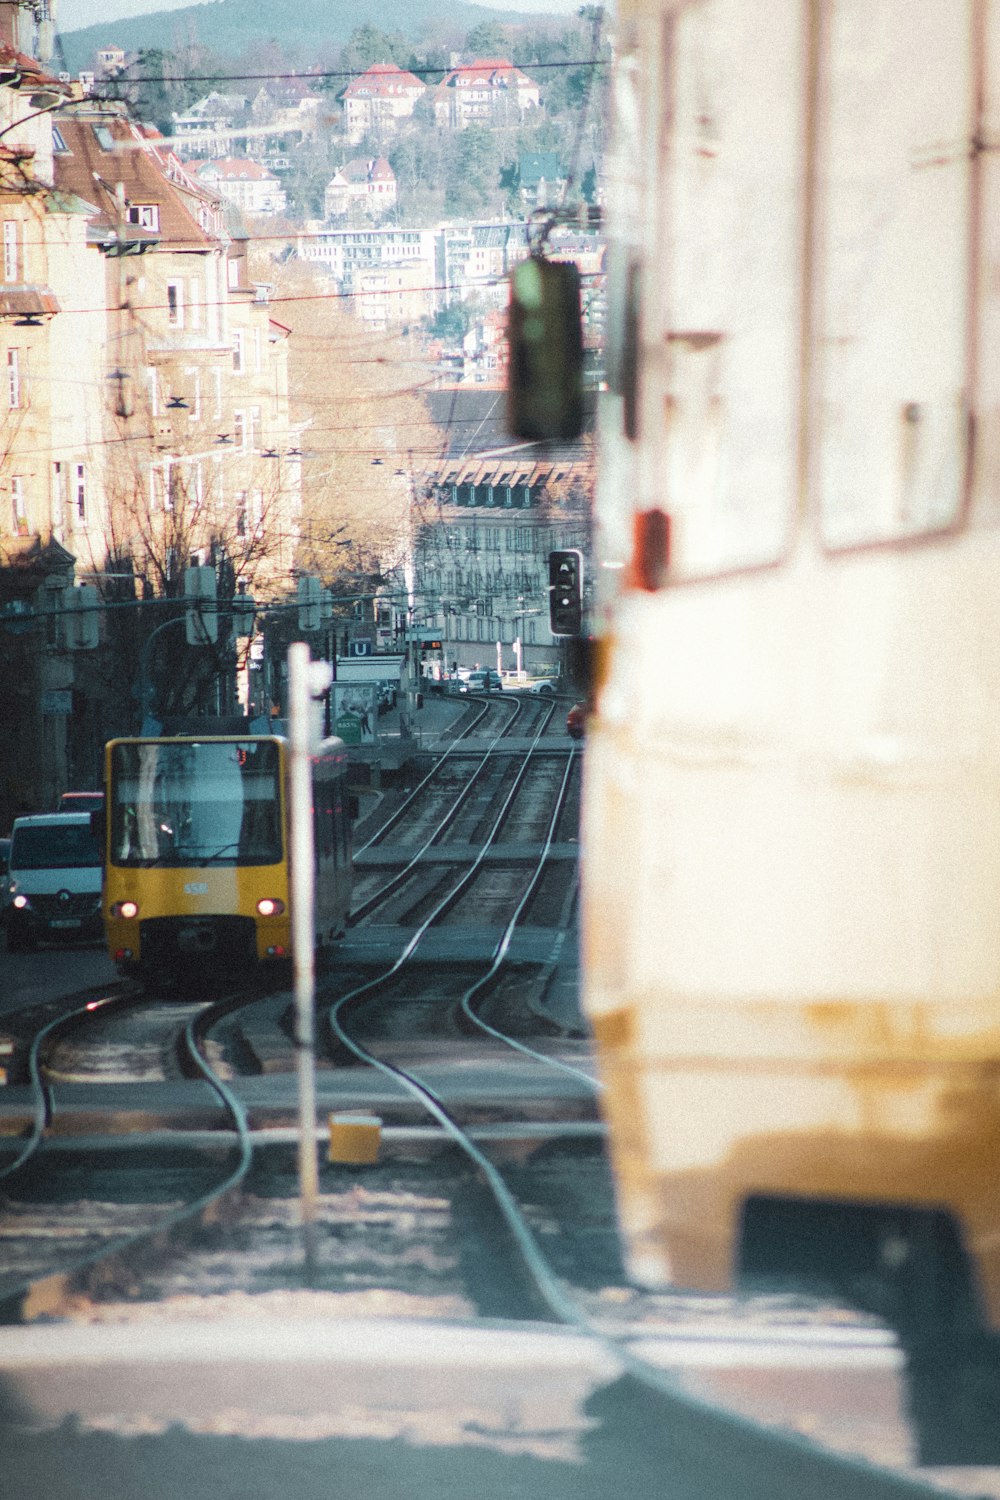 Un treno giallo che viaggia lungo i binari del treno accanto a edifici alti